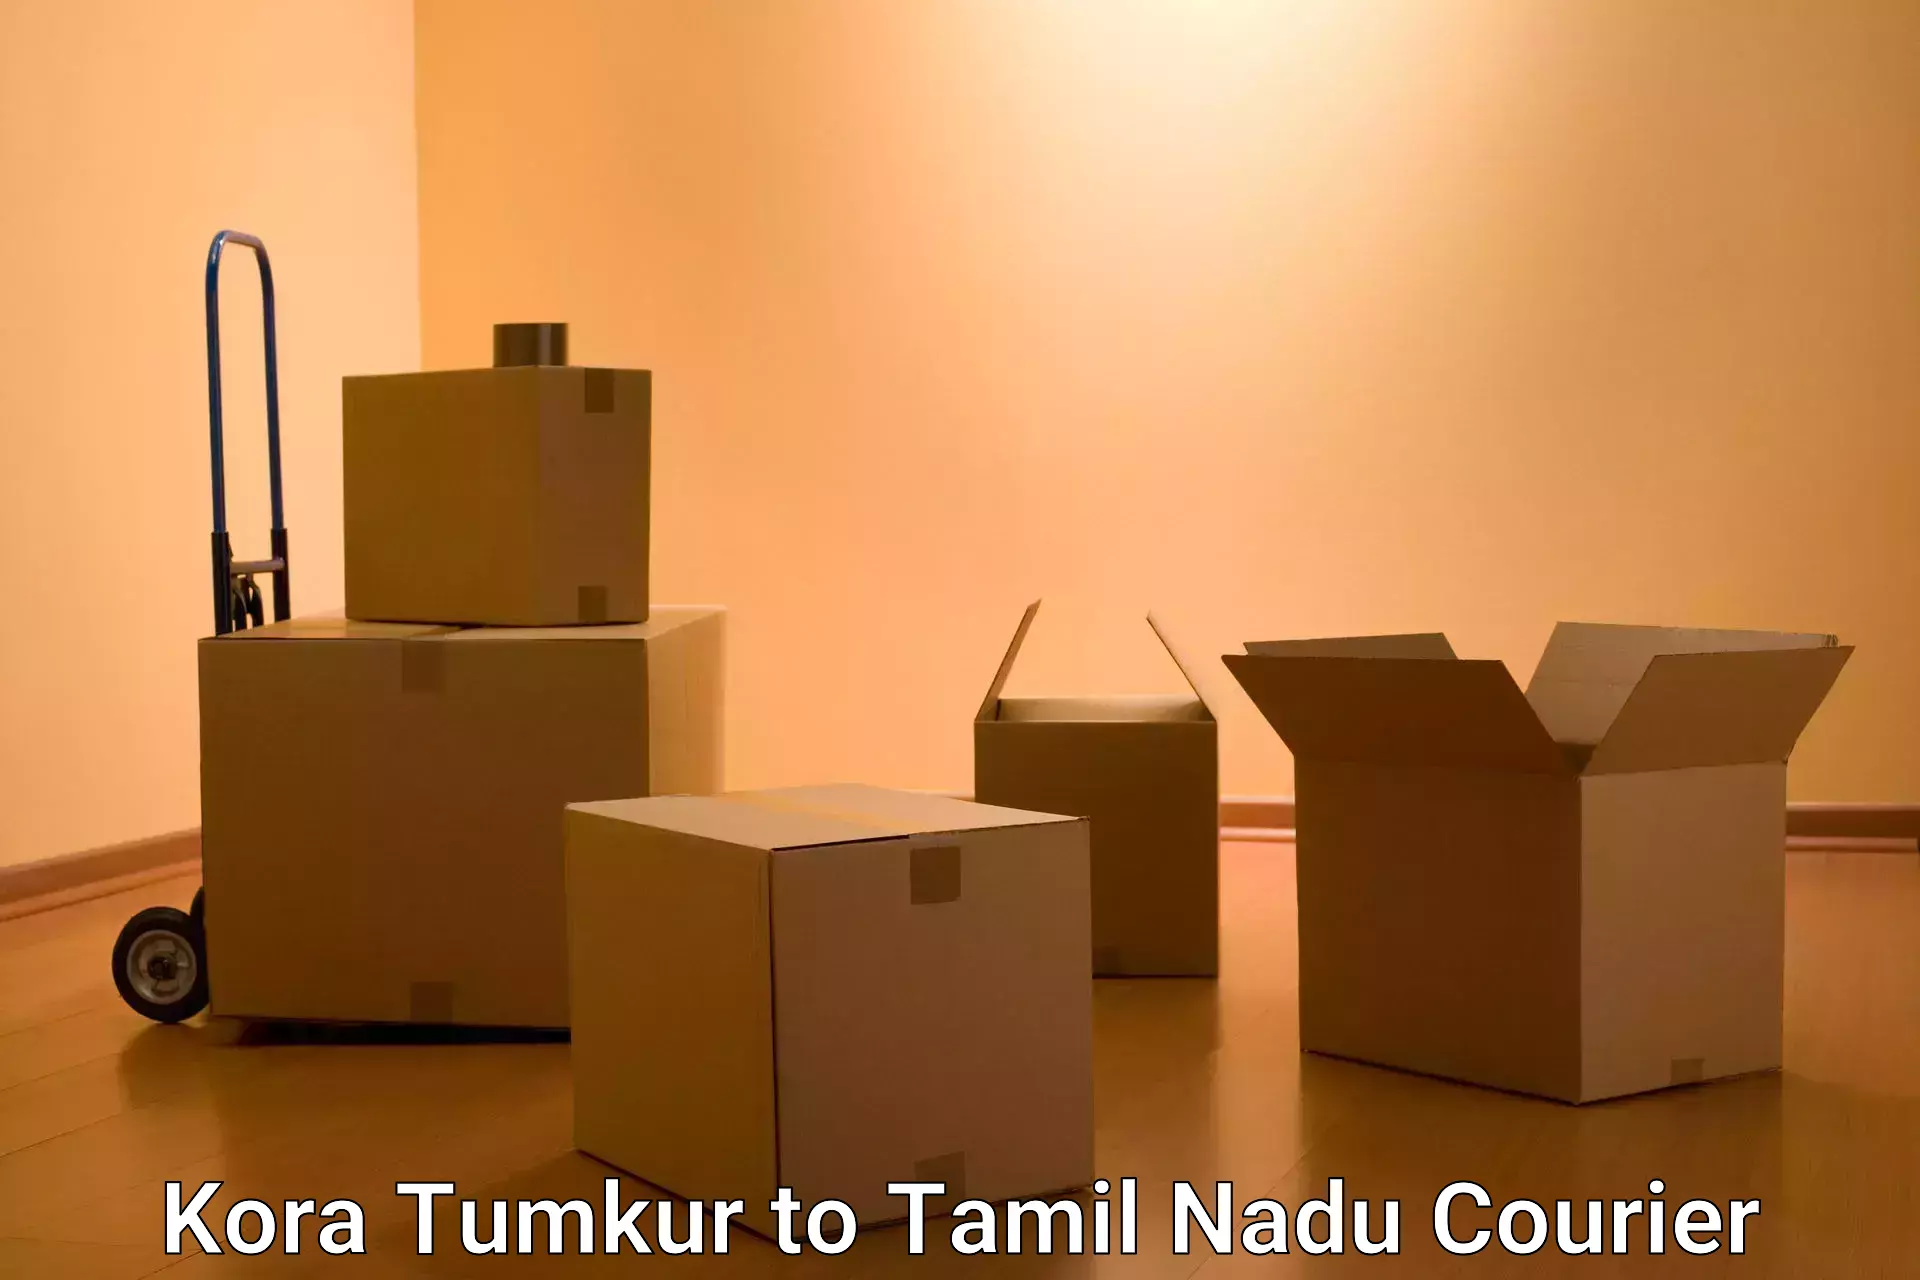 Professional courier services Kora Tumkur to Thiruthuraipoondi